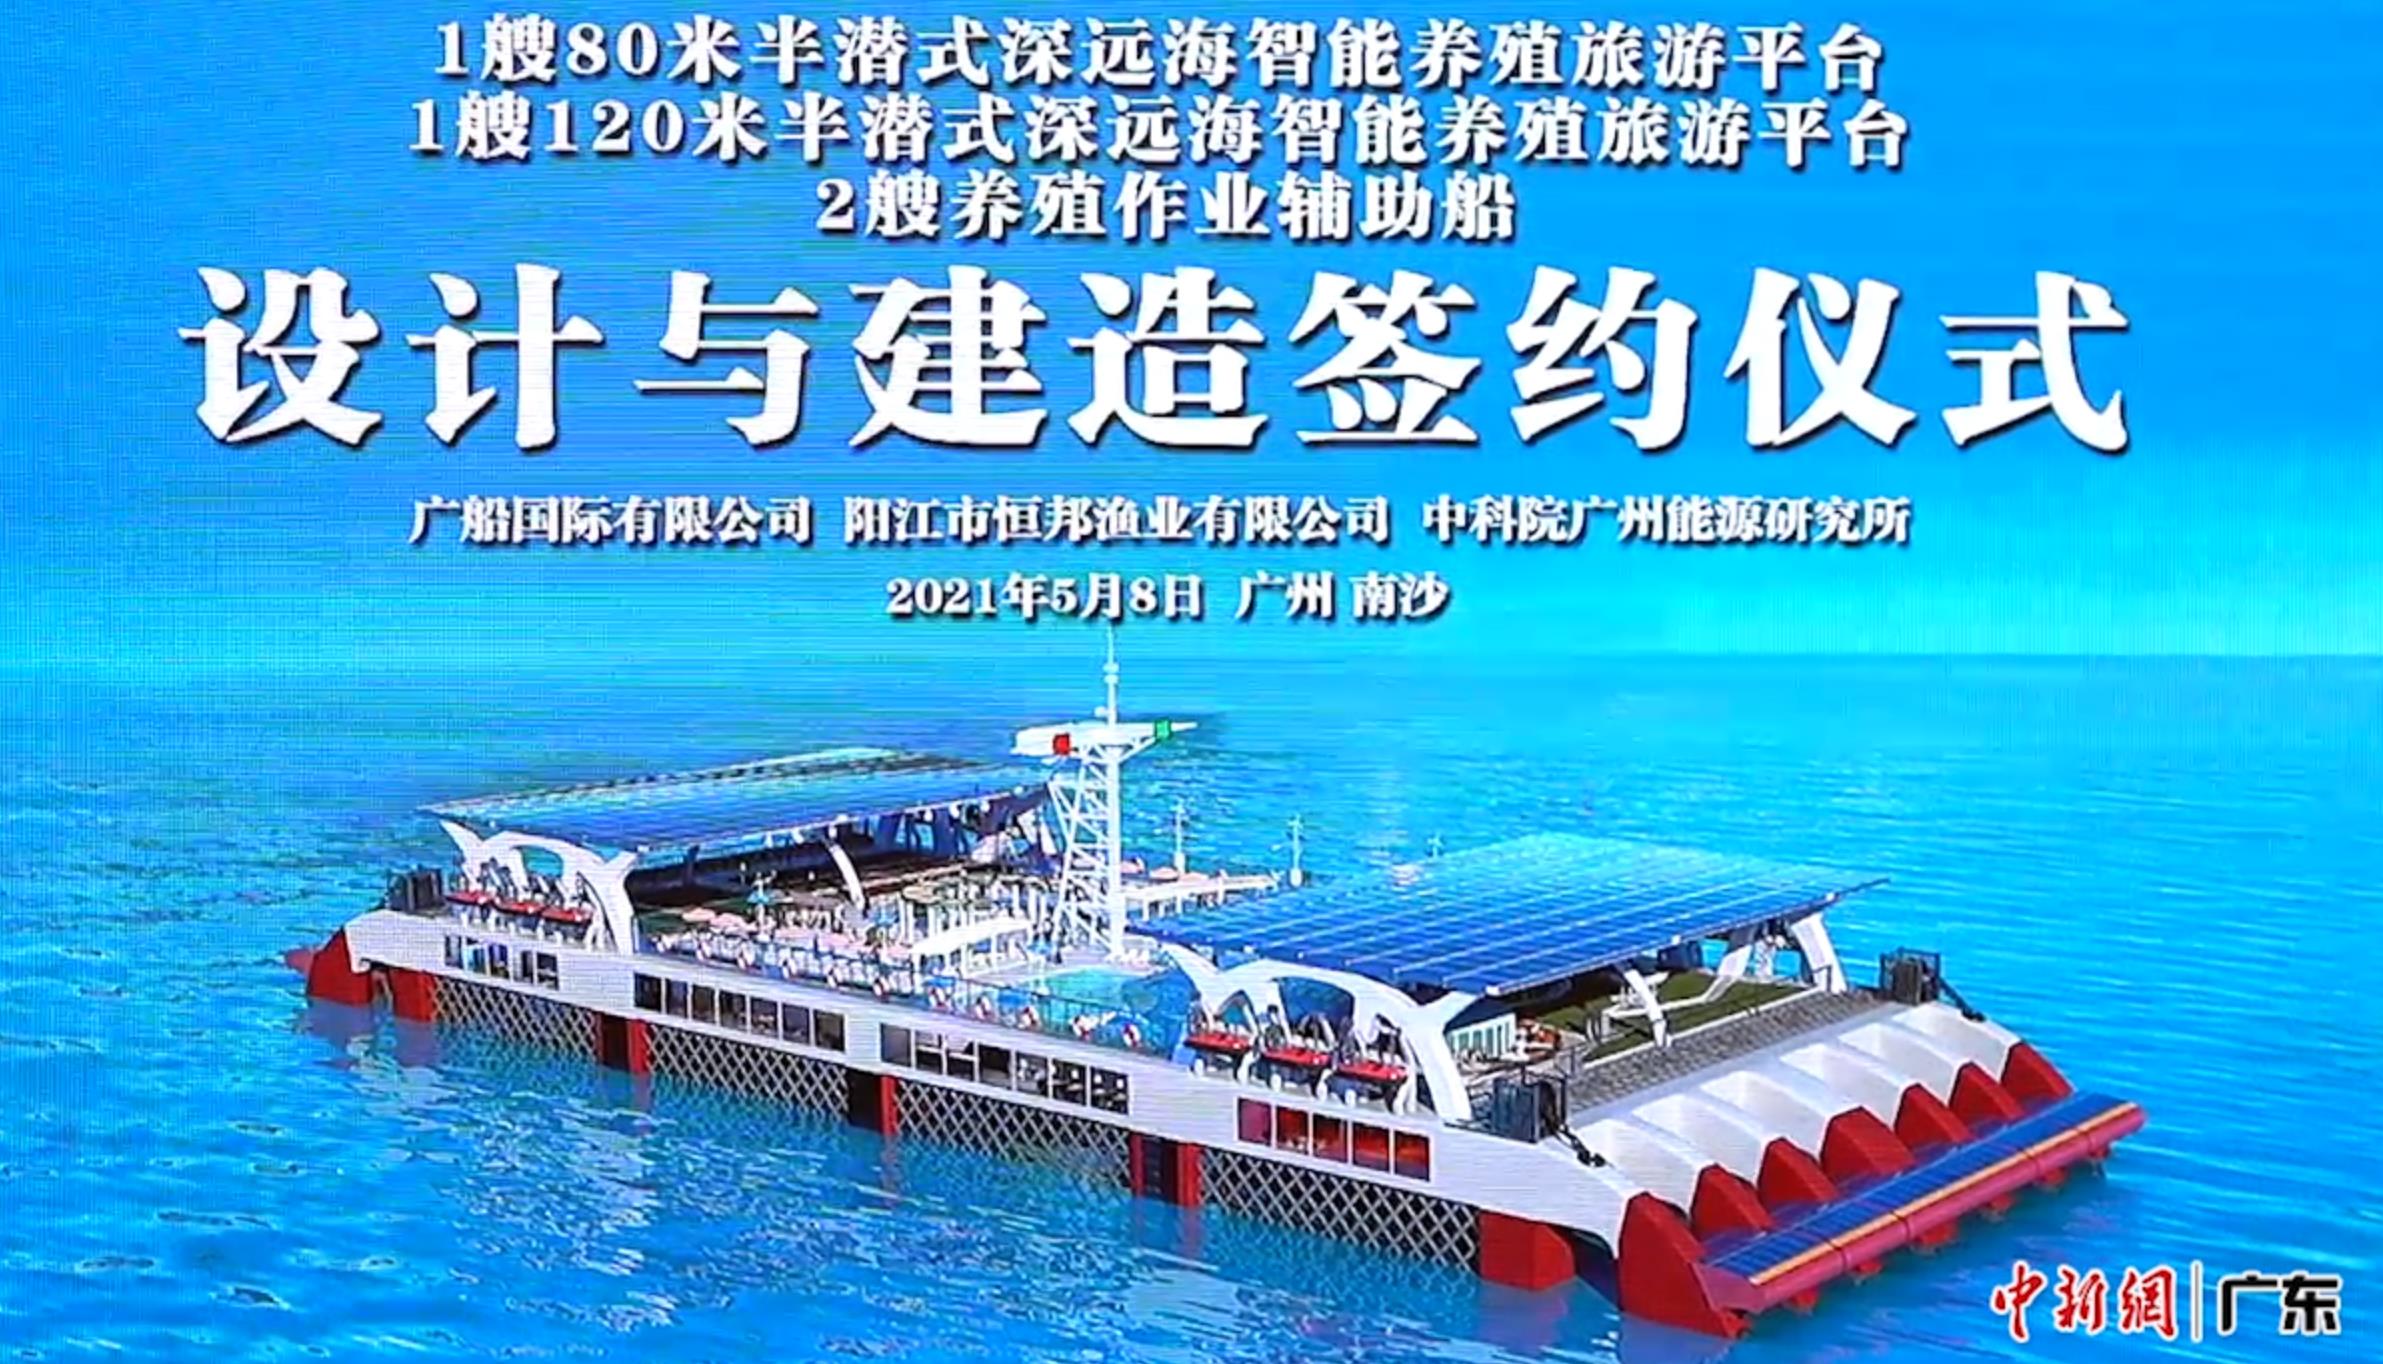 广州南沙将造广东首个大型半潜式深远海智能养殖旅游平台